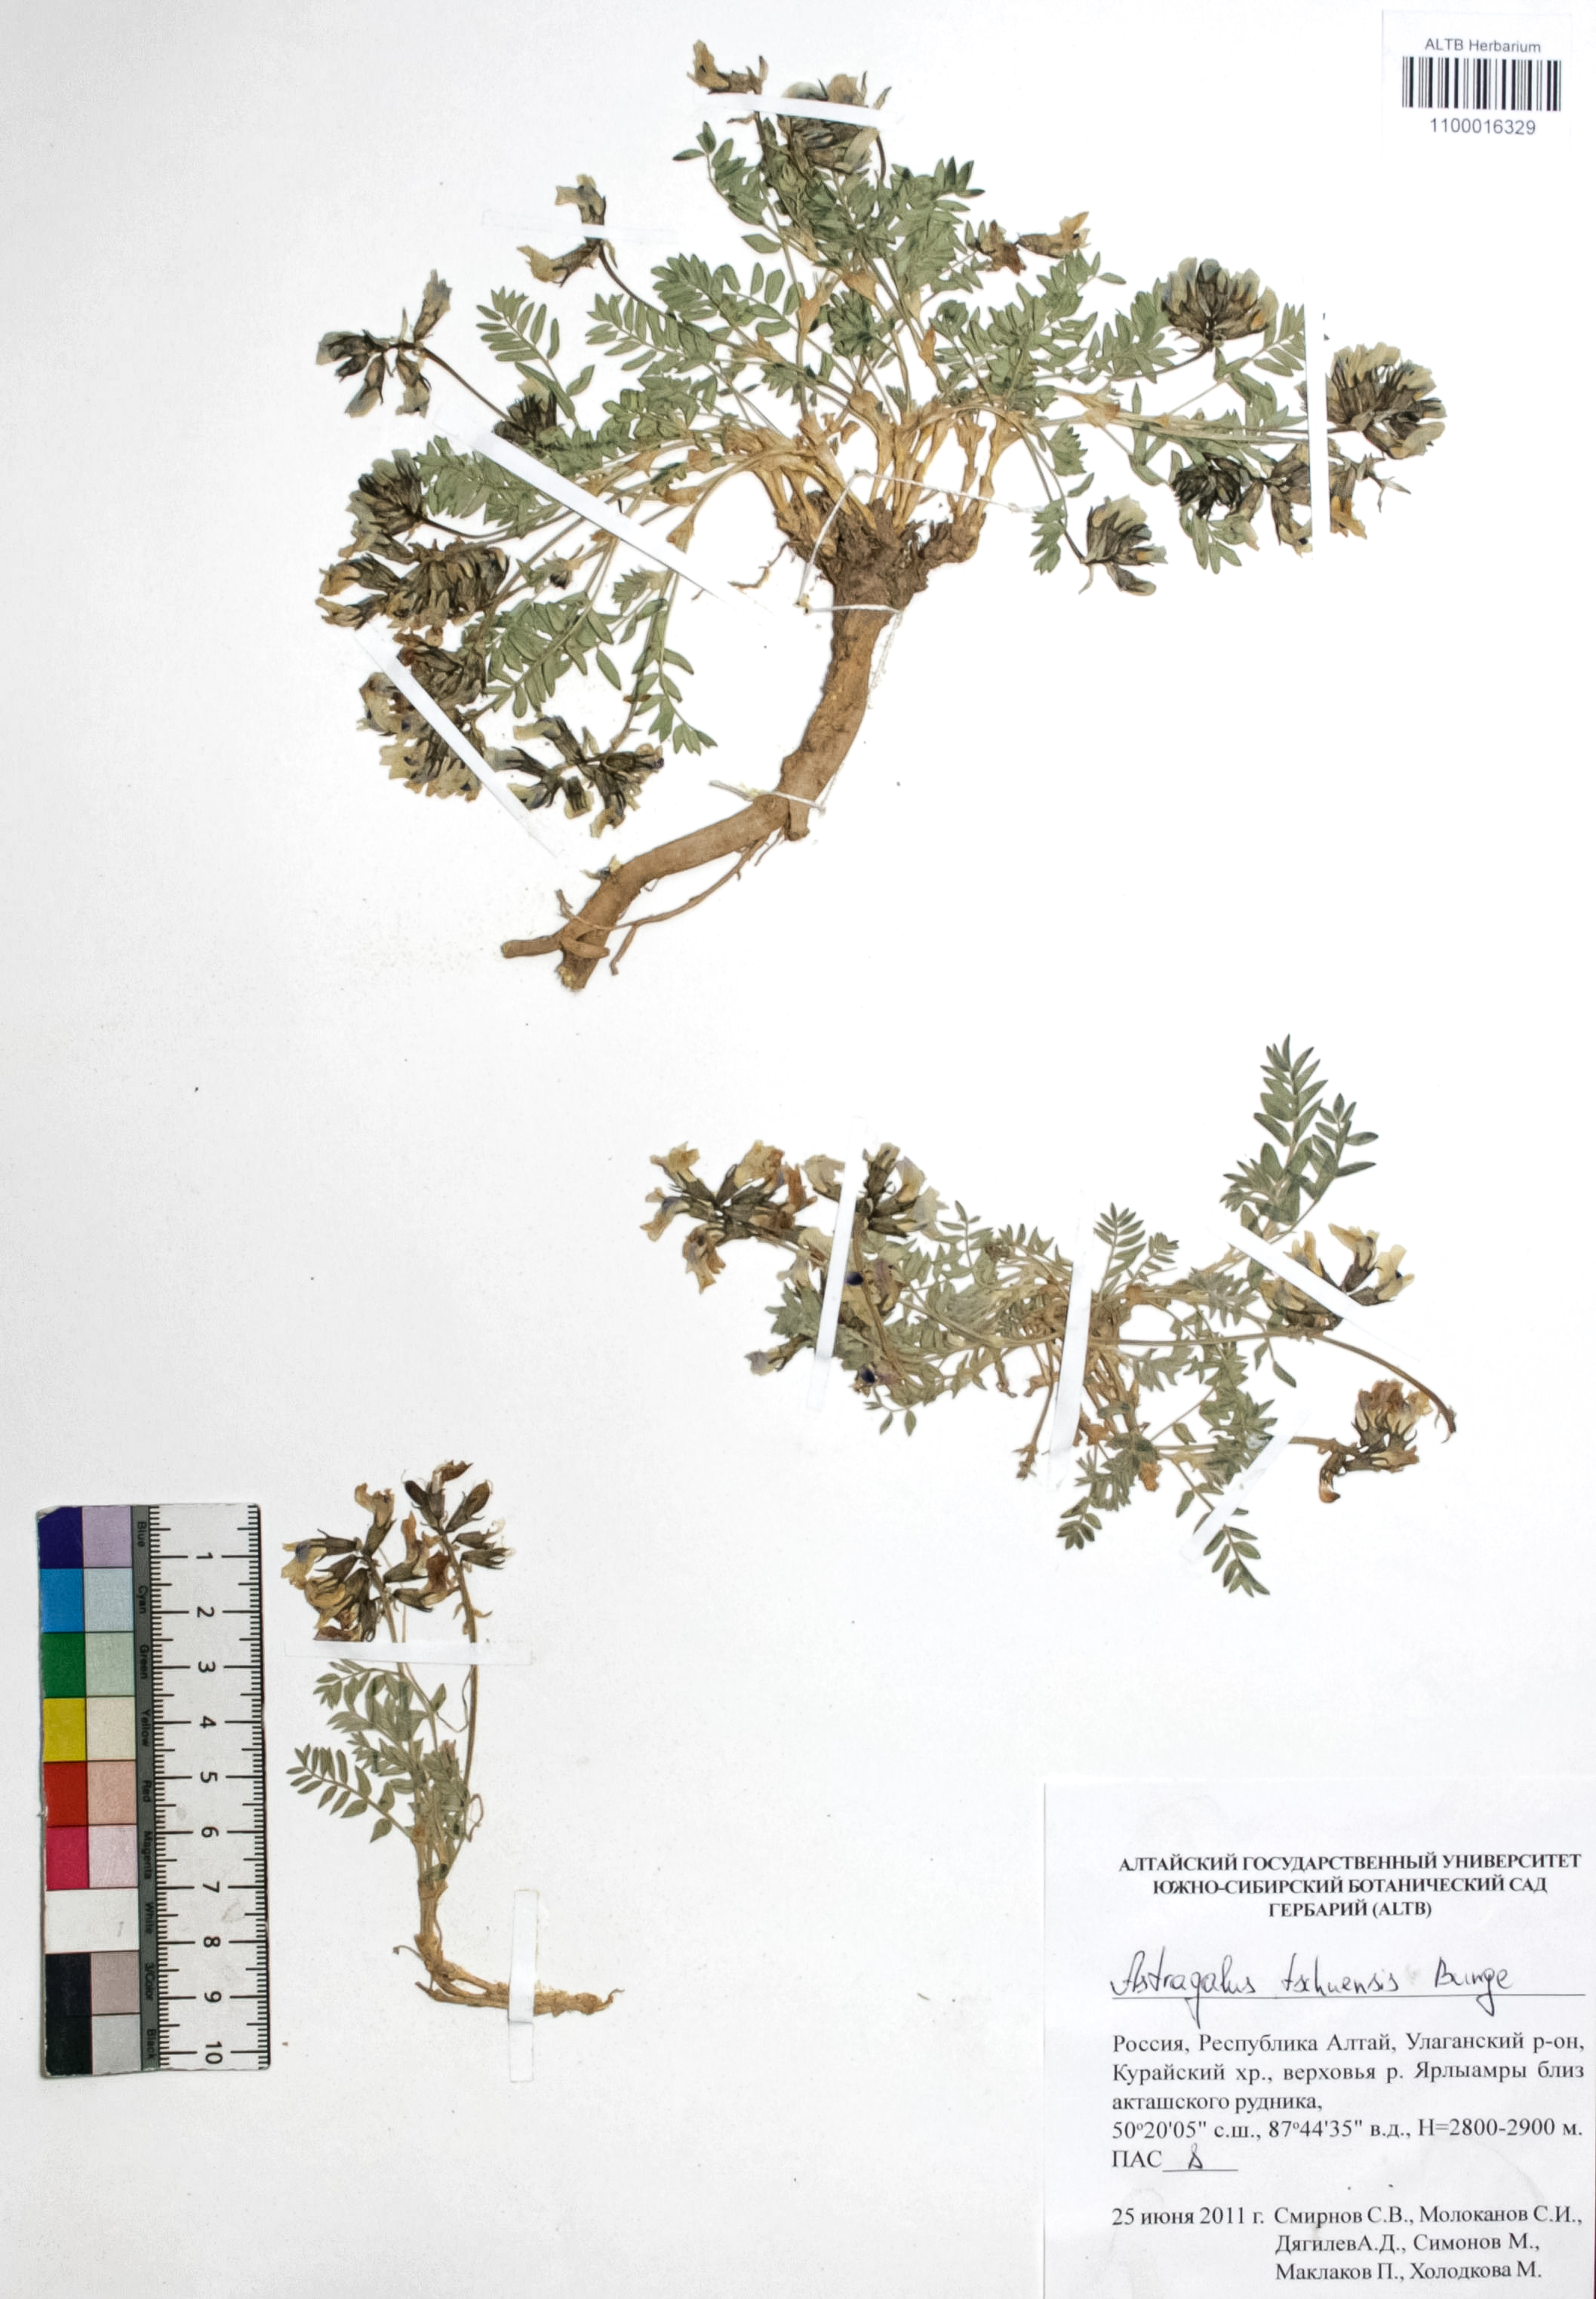 Astragalus tschuensis Bunge. 